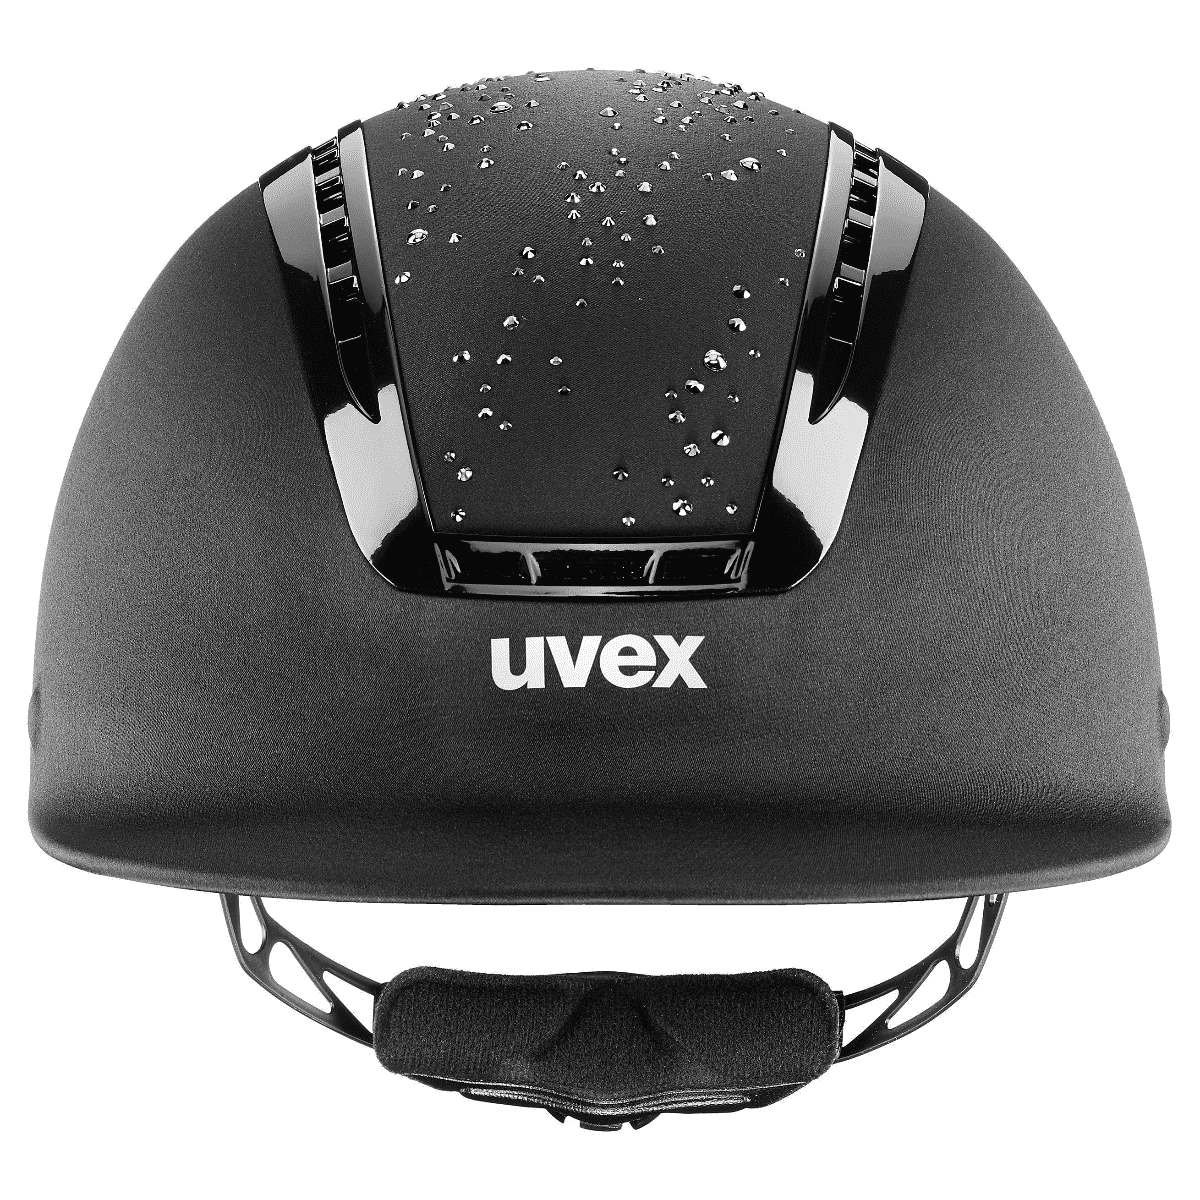 UVEX Suxxeed Diamond Helmet